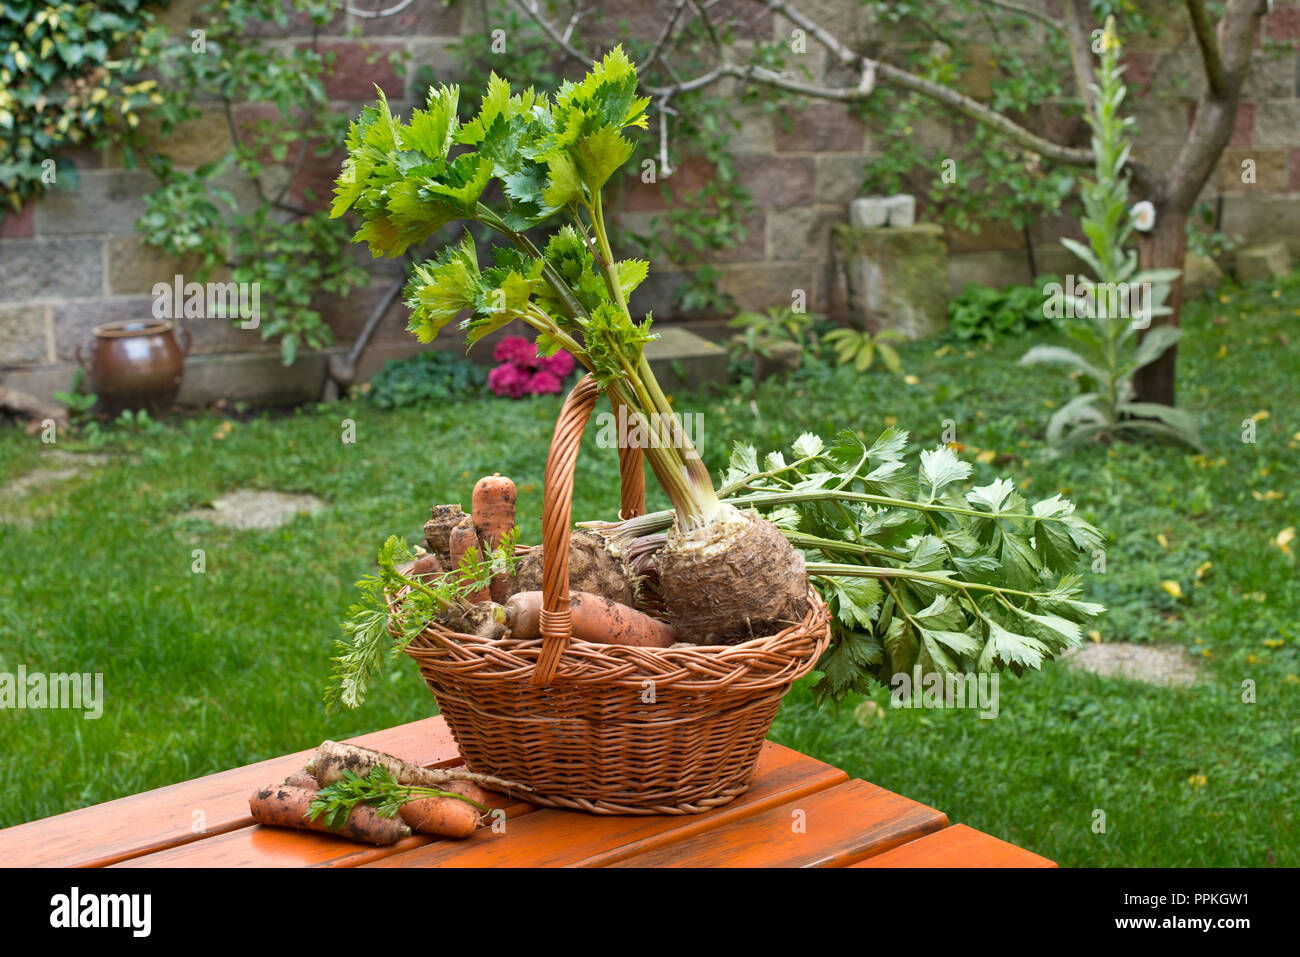 Sherley, Sellerie und Karotten im Weidenkorb. Stockfoto